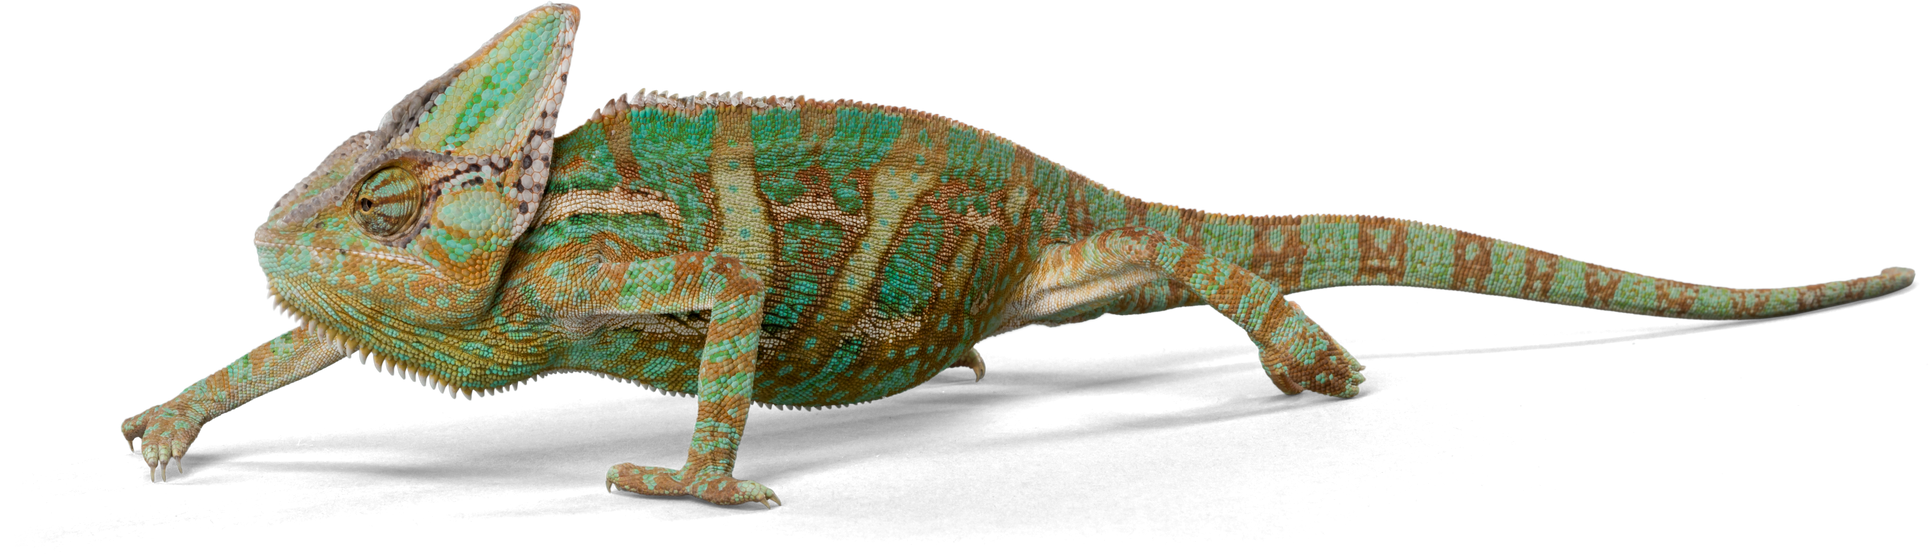 Yemen Chameleon - Isolated